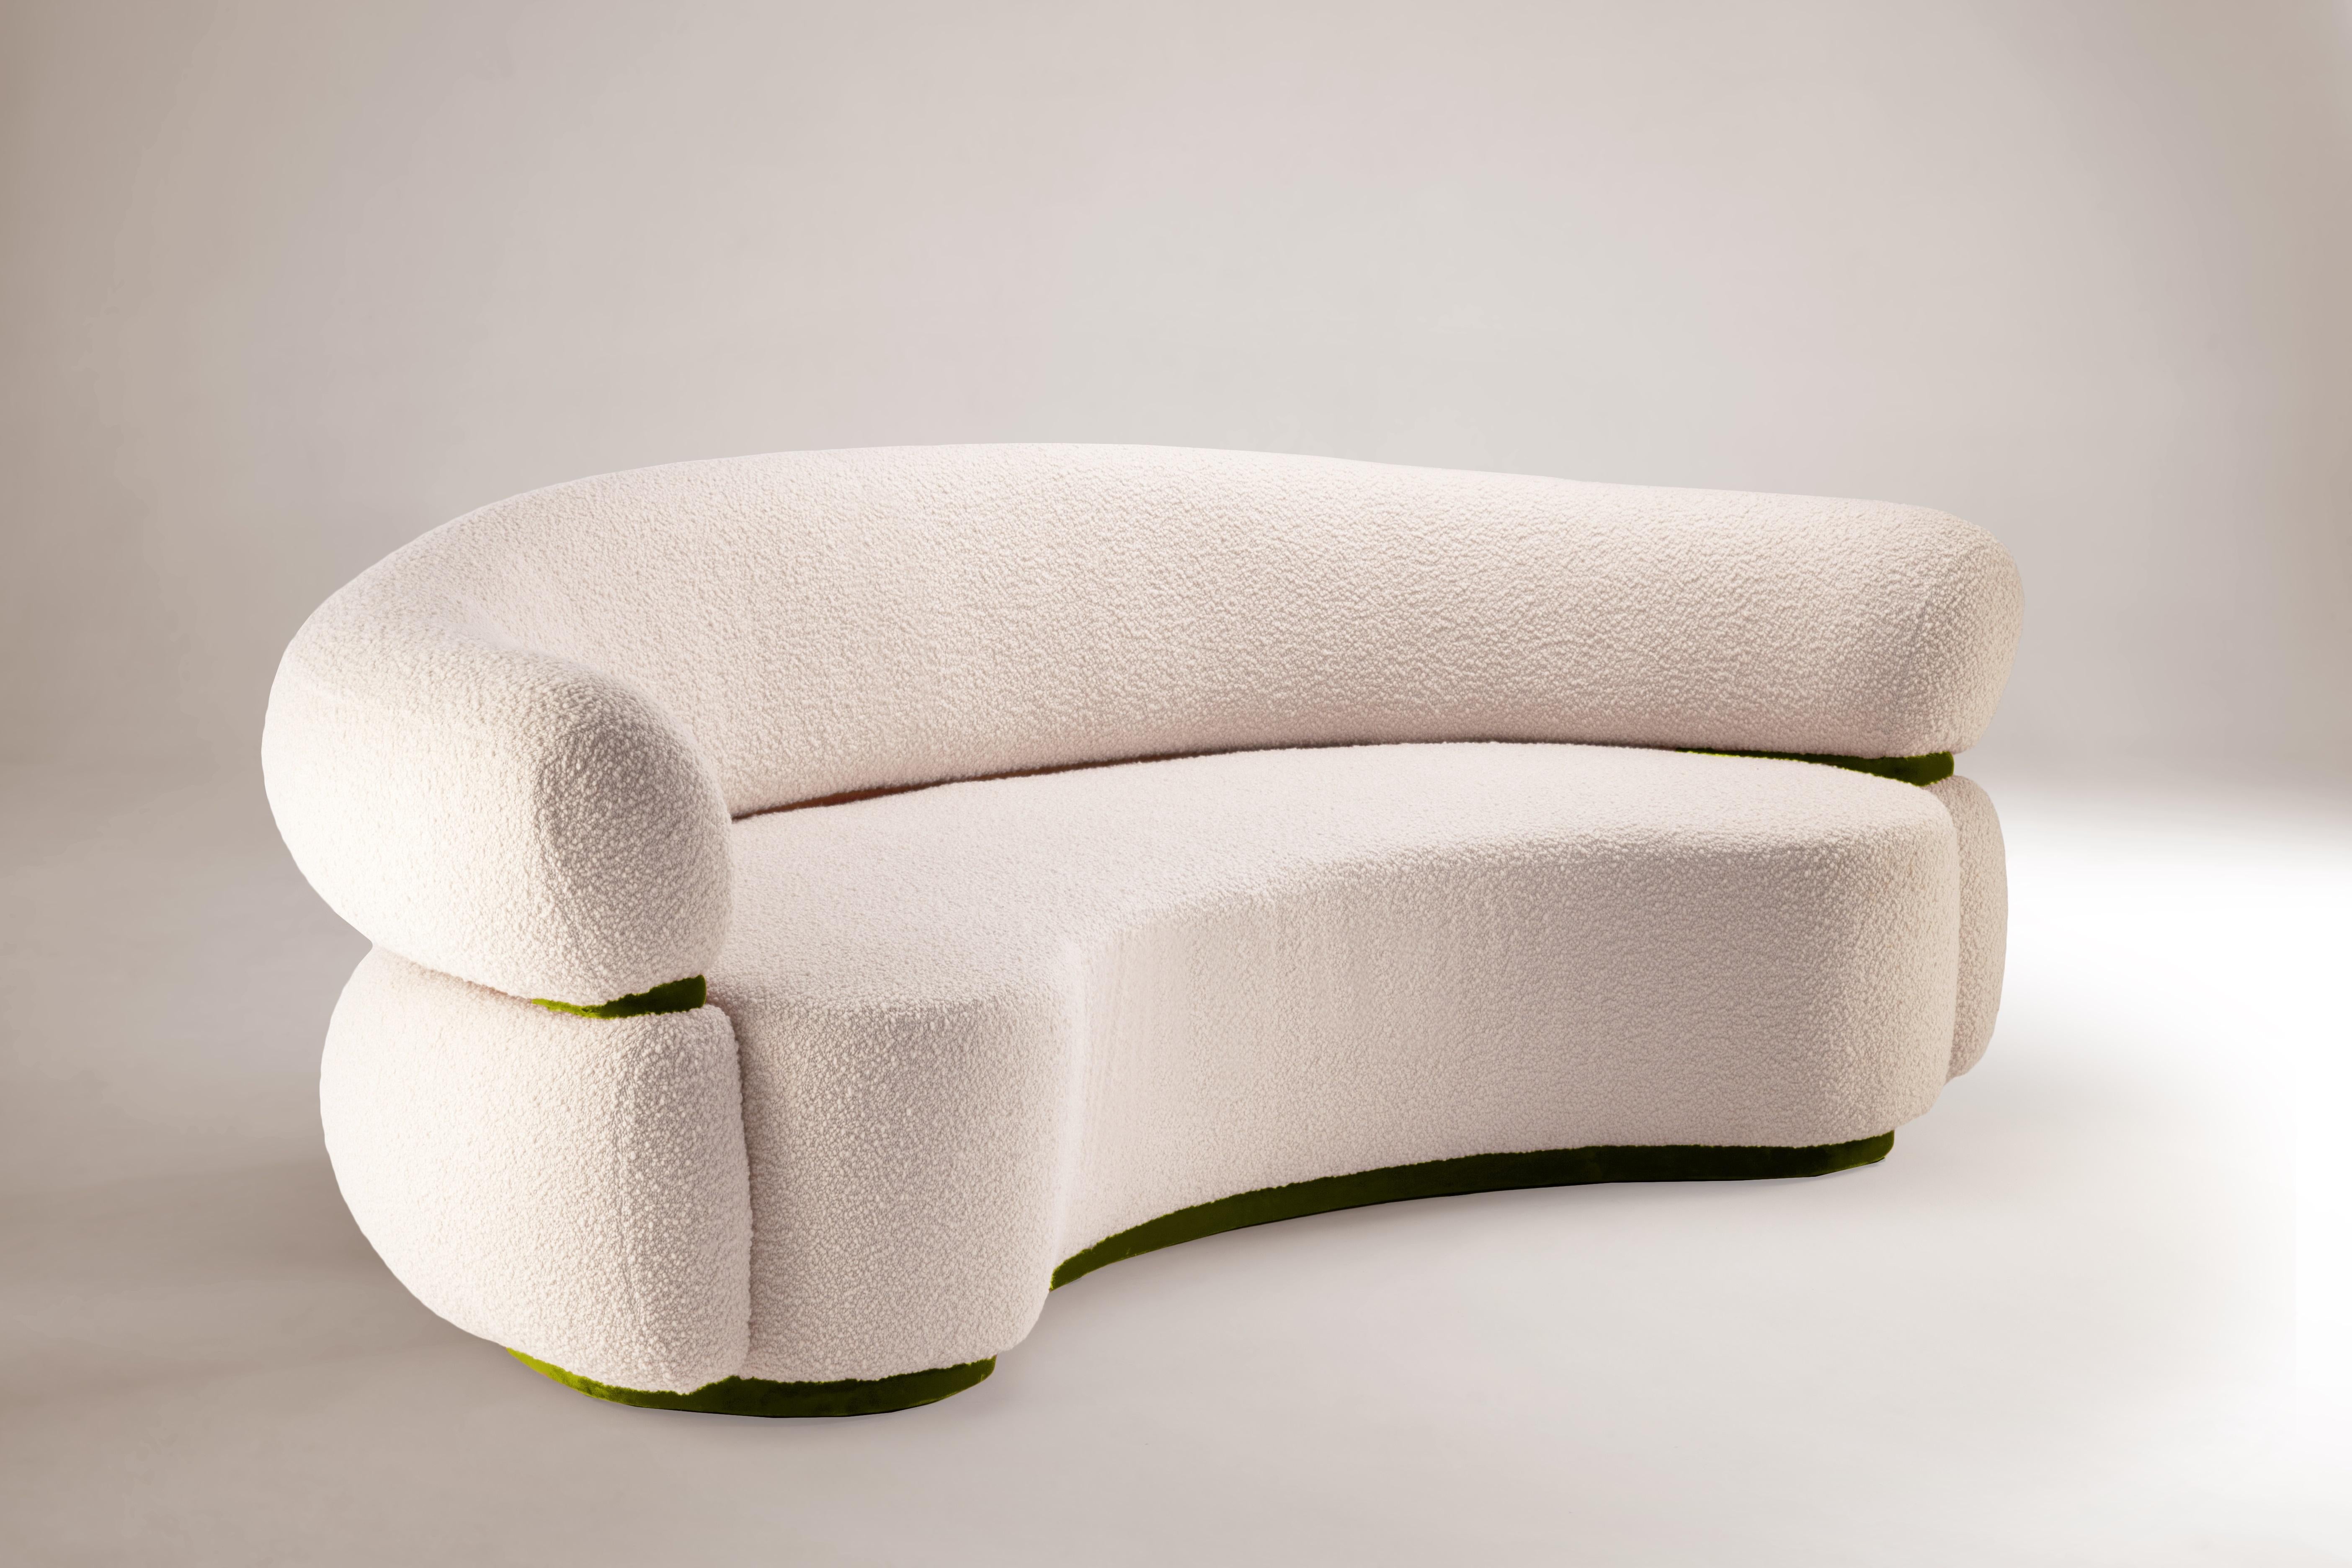 Wie eine warme Umarmung empfängt Sie das Malibu Round Sofa zum Verweilen und Entspannen. Als gehobene Hommage an das goldene Zeitalter des Midcentury-Designs und der organischen Architektur strahlt er durch seine ungewöhnlichen Proportionen und